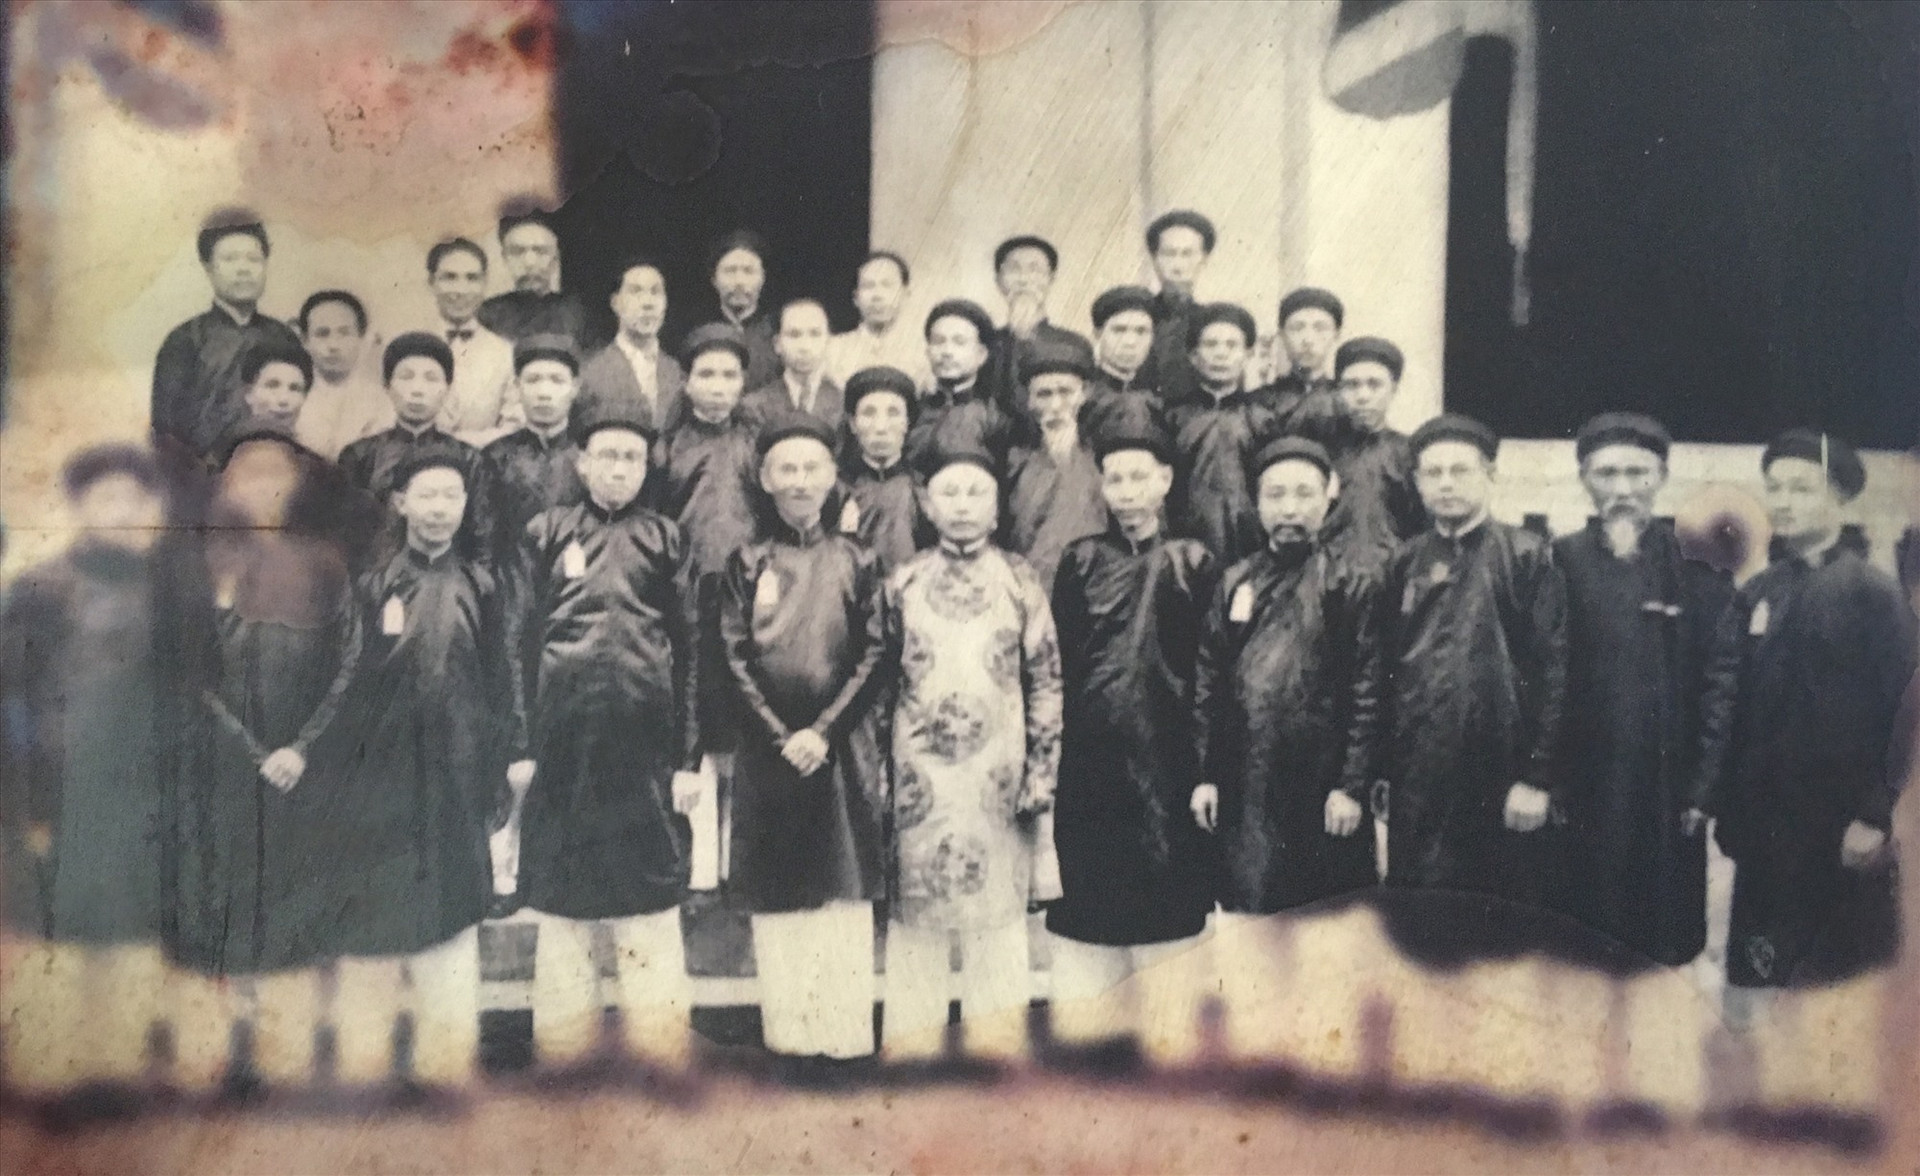 Ông Bùi Huy Tín (đứng giữa) trong buổi họp Hội Đồng châu Bắc kỳ tại Huế năm 1922 (lưu trữ tại Hội Đồng châu Bắc kỳ).